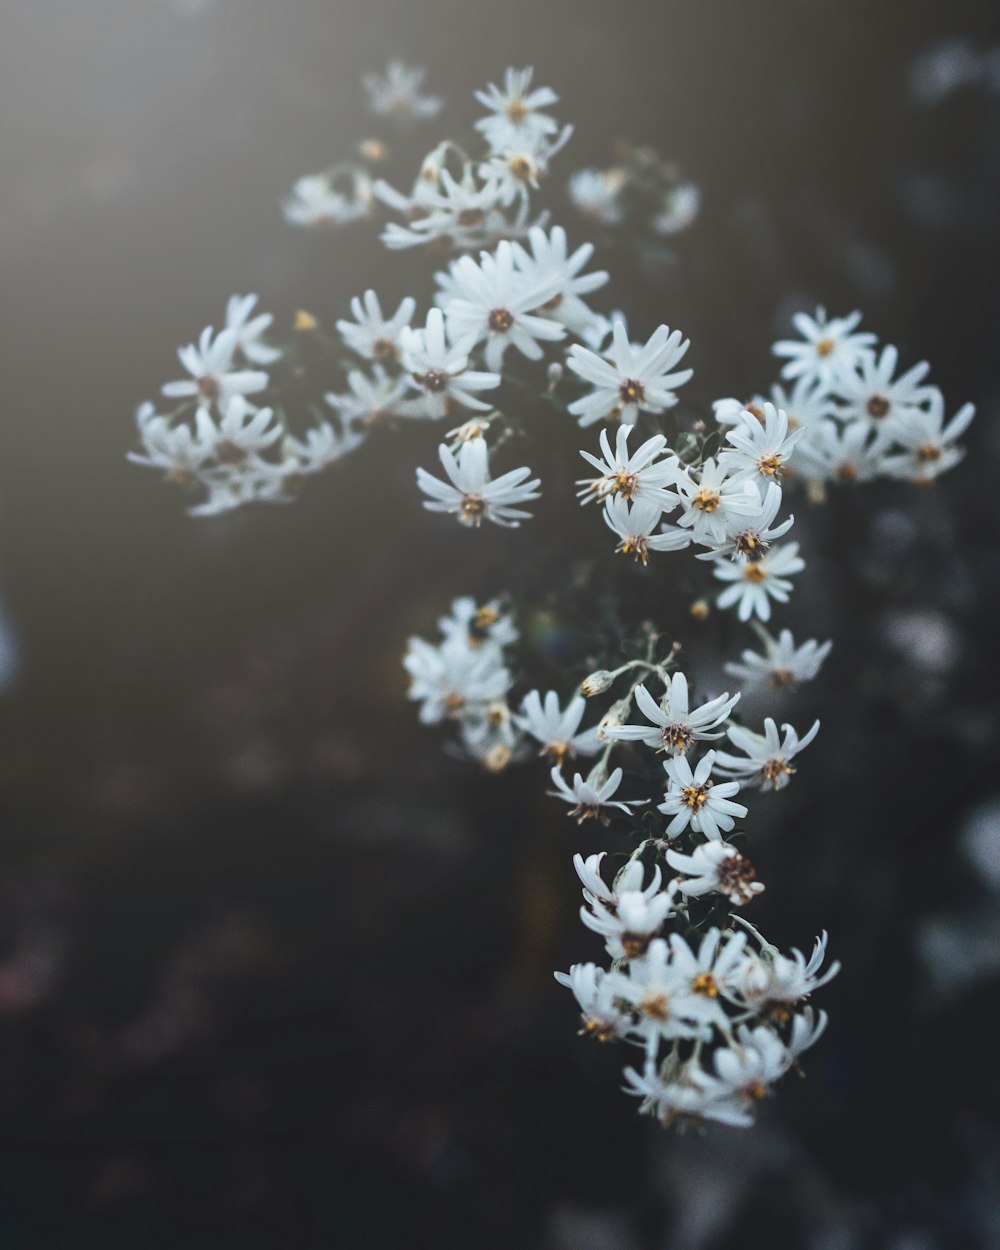 white flowers in tilt shift lens photography